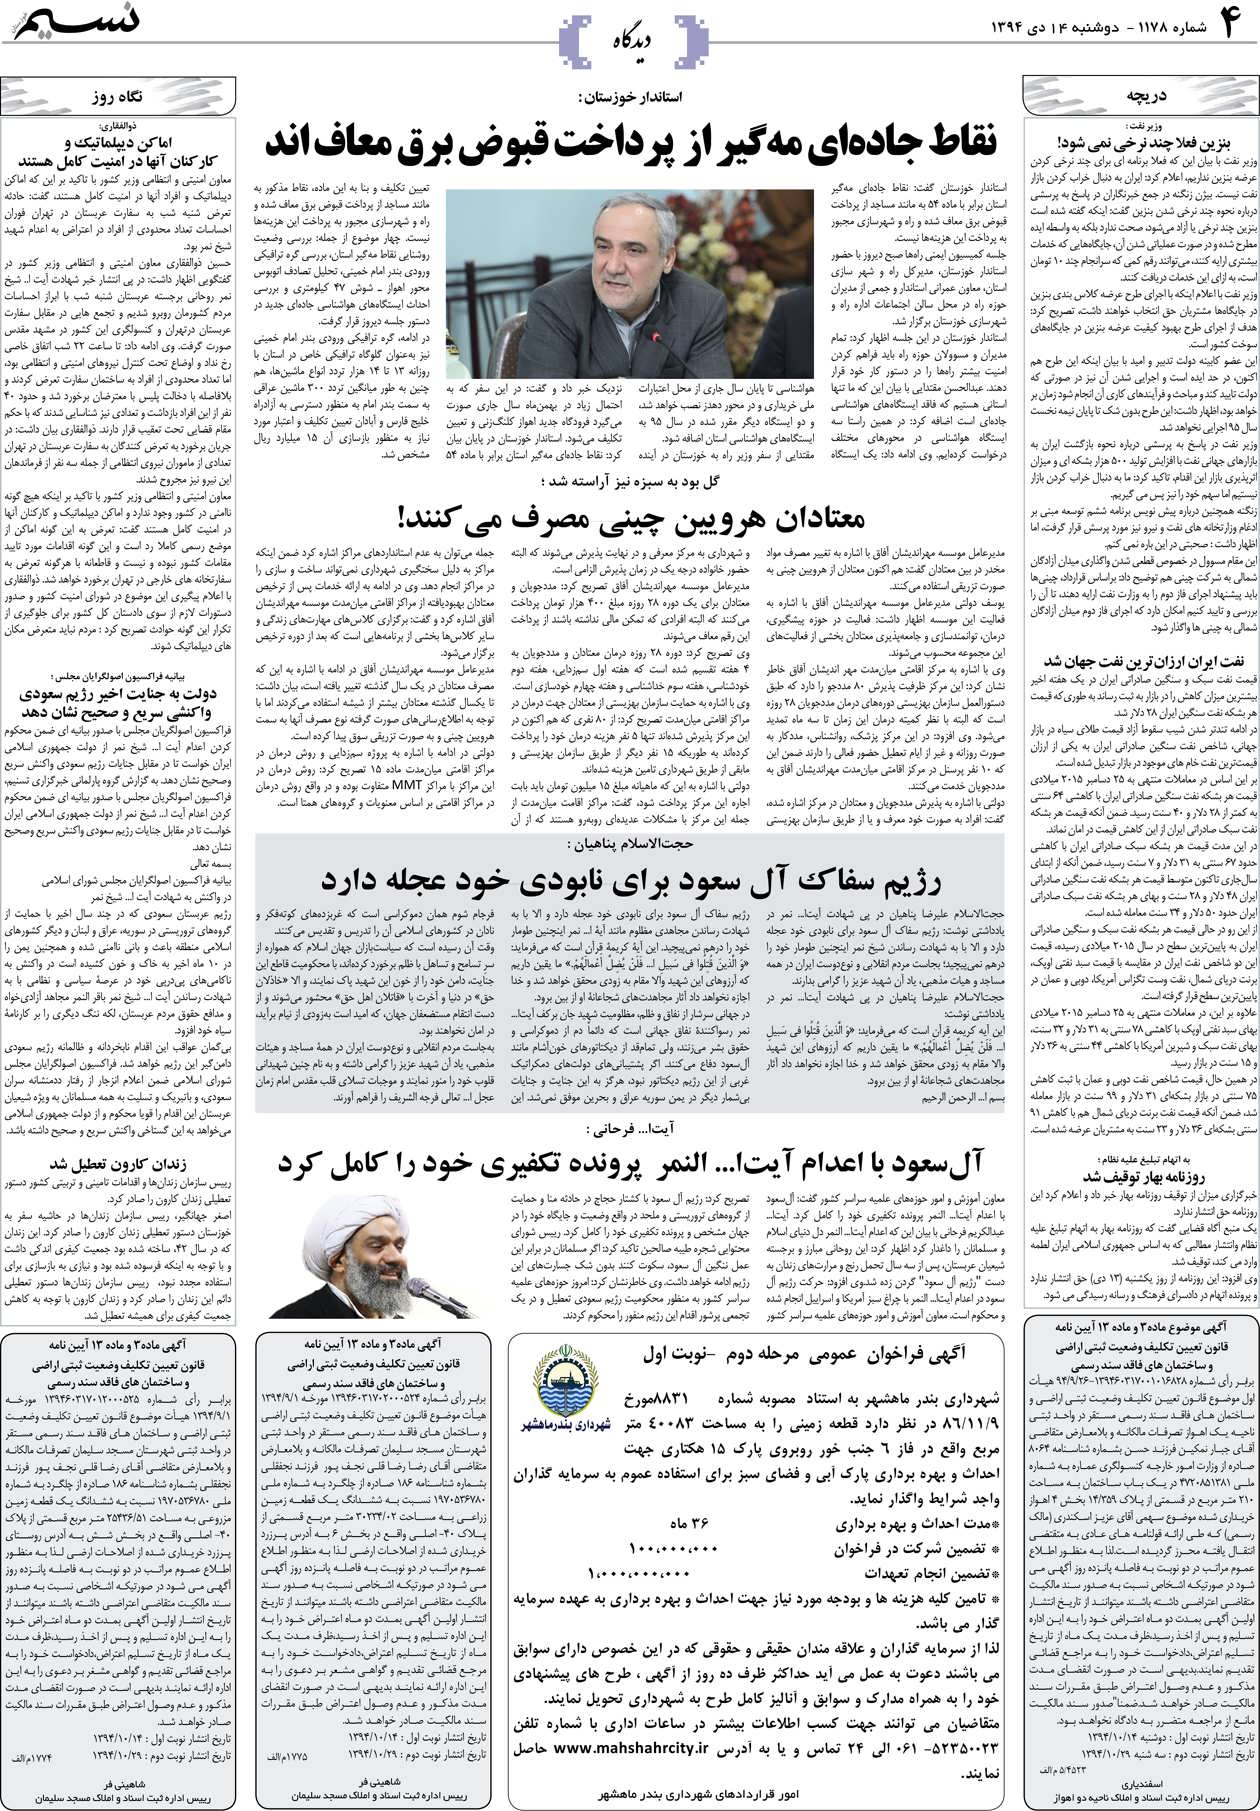 صفحه دیدگاه روزنامه نسیم شماره 1178